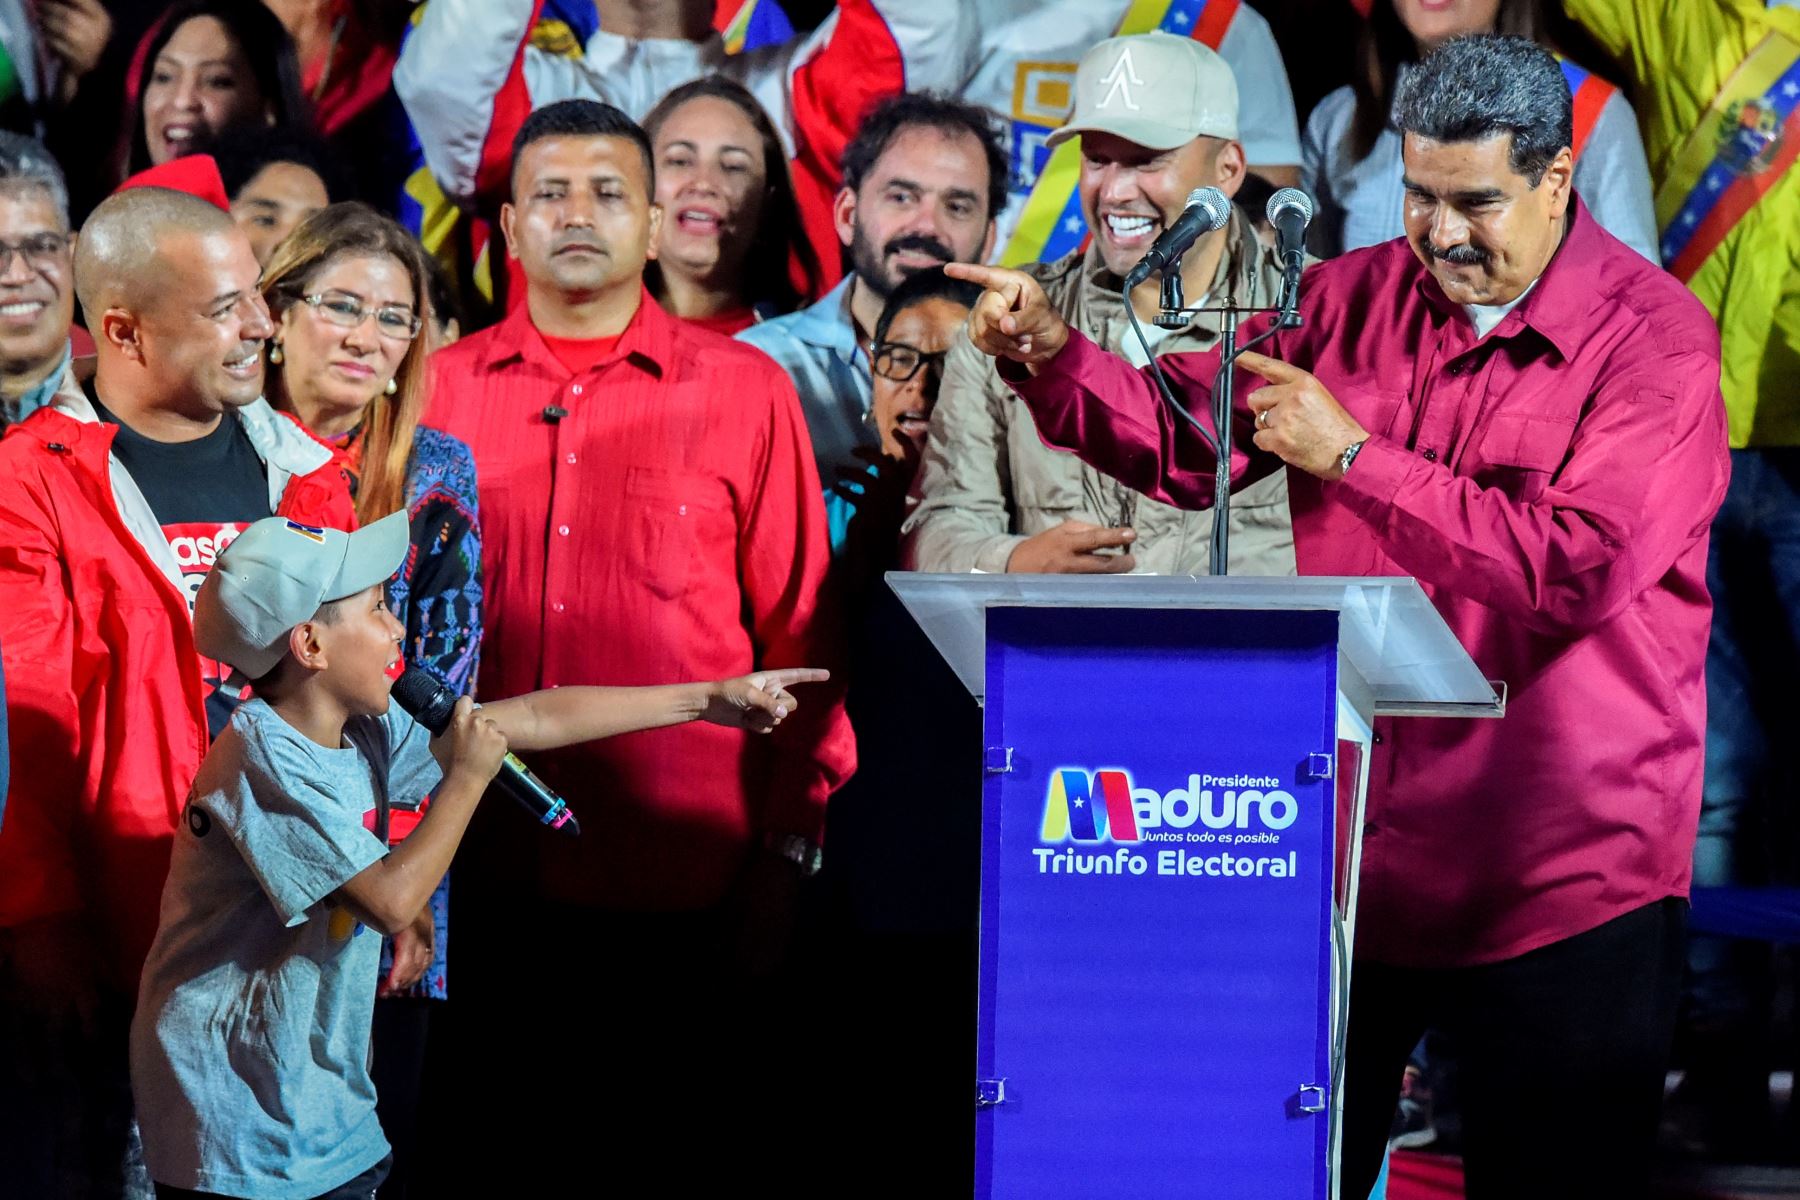 El presidente Nicolás Maduro fue declarado ganador de las elecciones venezolanas el domingo en una encuesta rechazada como inválida por sus rivales, que convocaron a nuevas elecciones.Foto:AFP